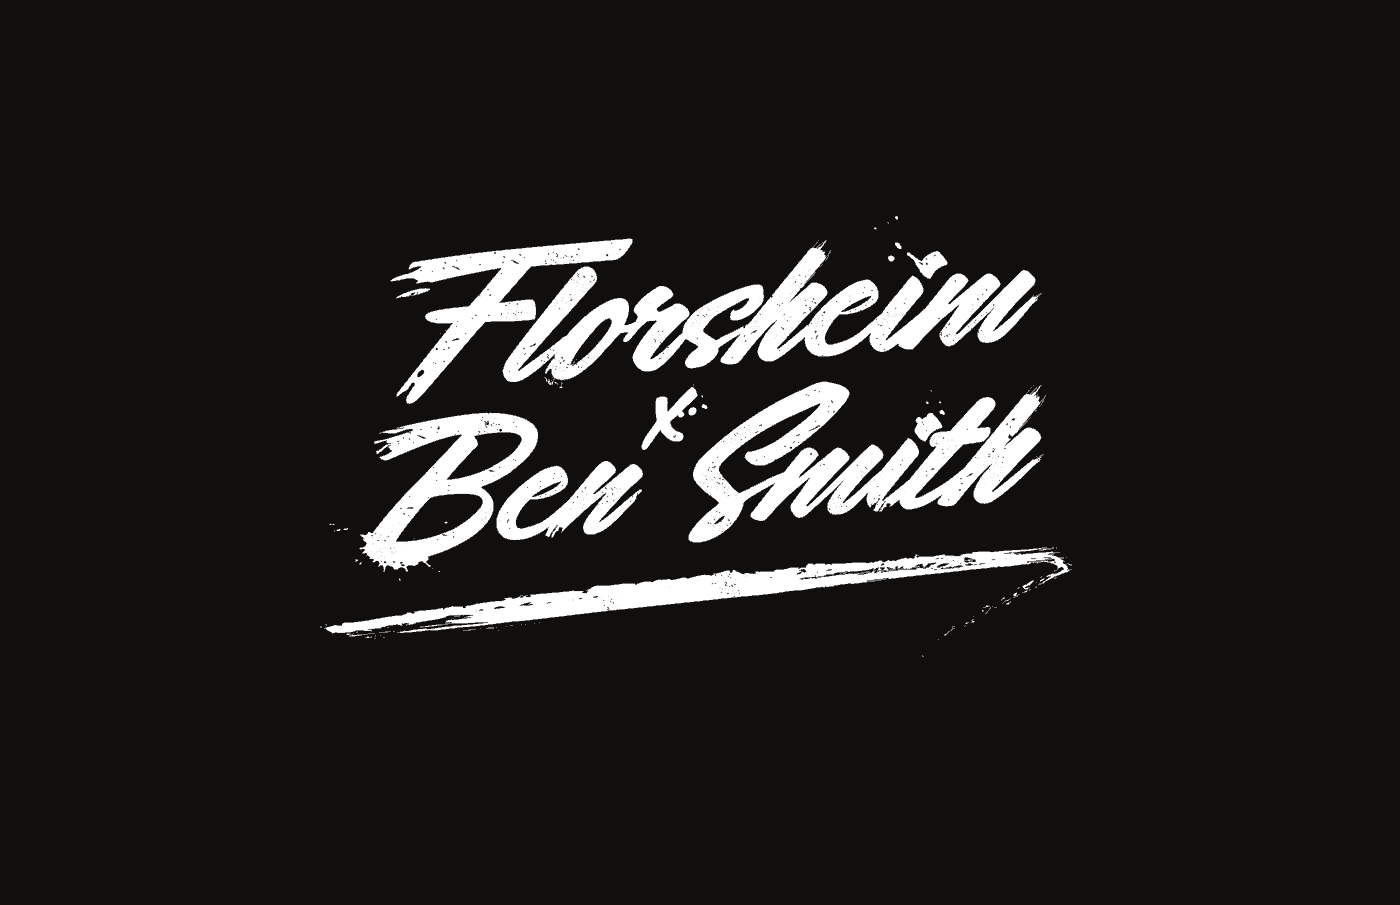 Florsheim x Ben Smith Collaboration